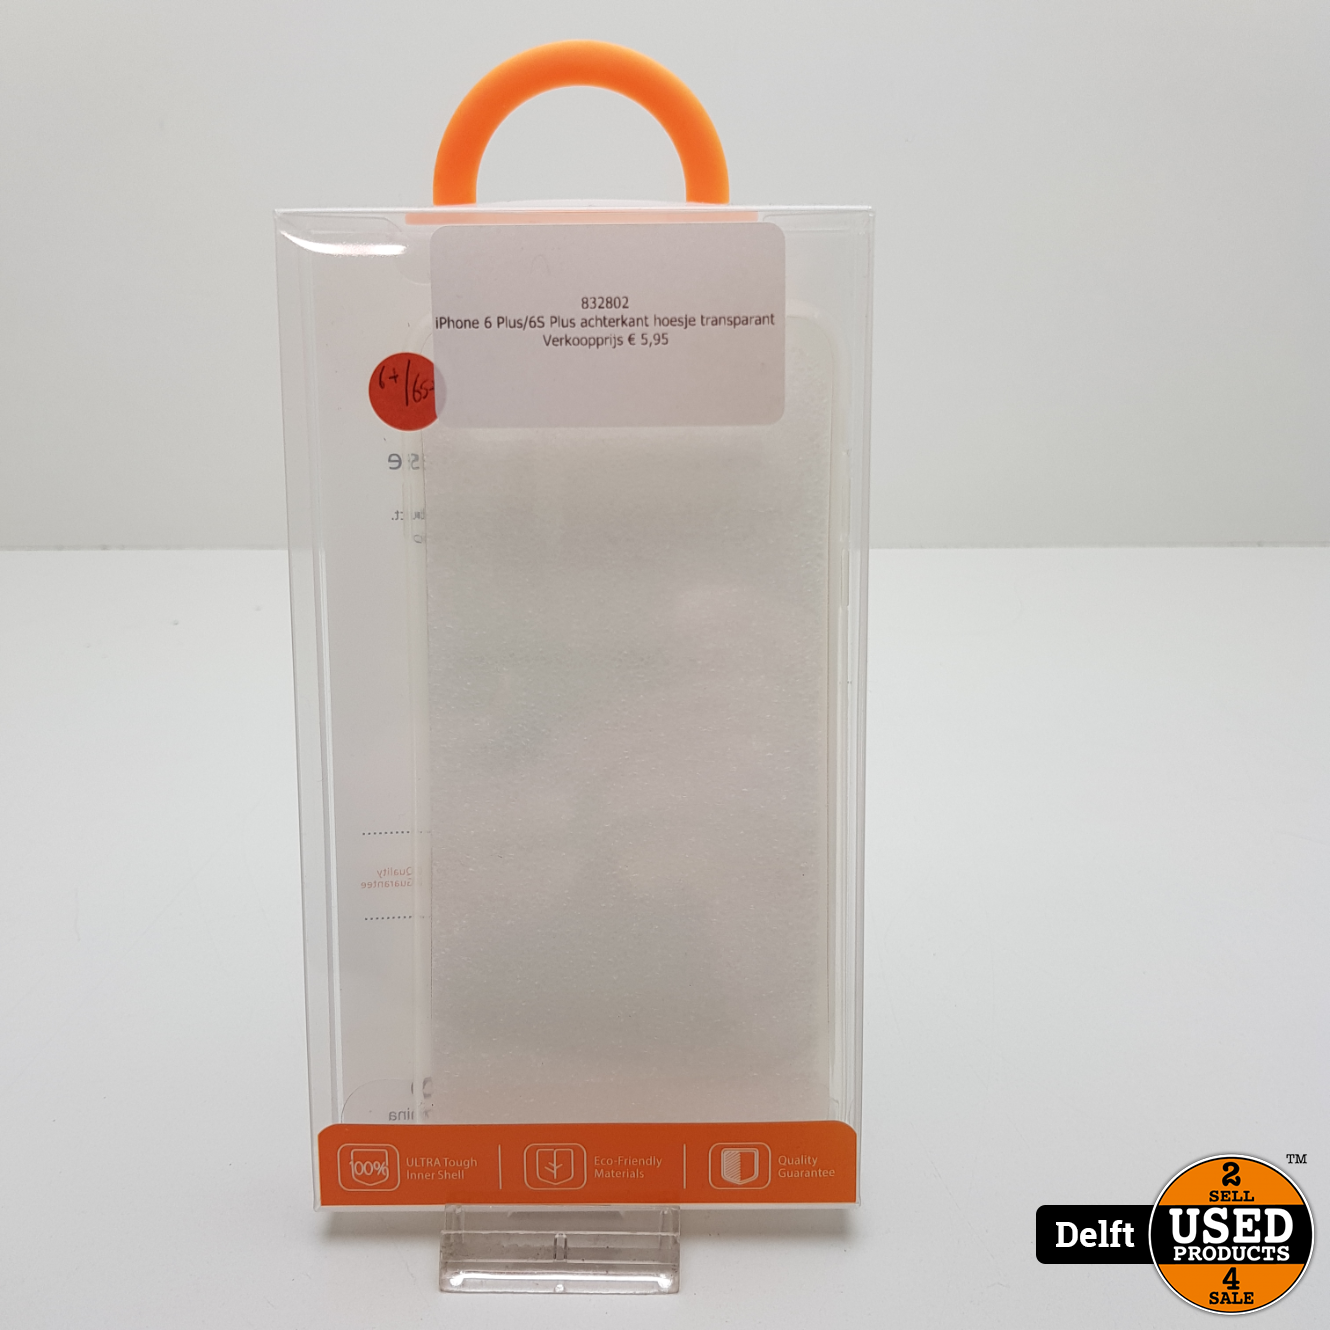 motor verzonden Zeemeeuw iPhone 6 Plus/6S Plus achterkant hoesje transparant - Used Products Delft